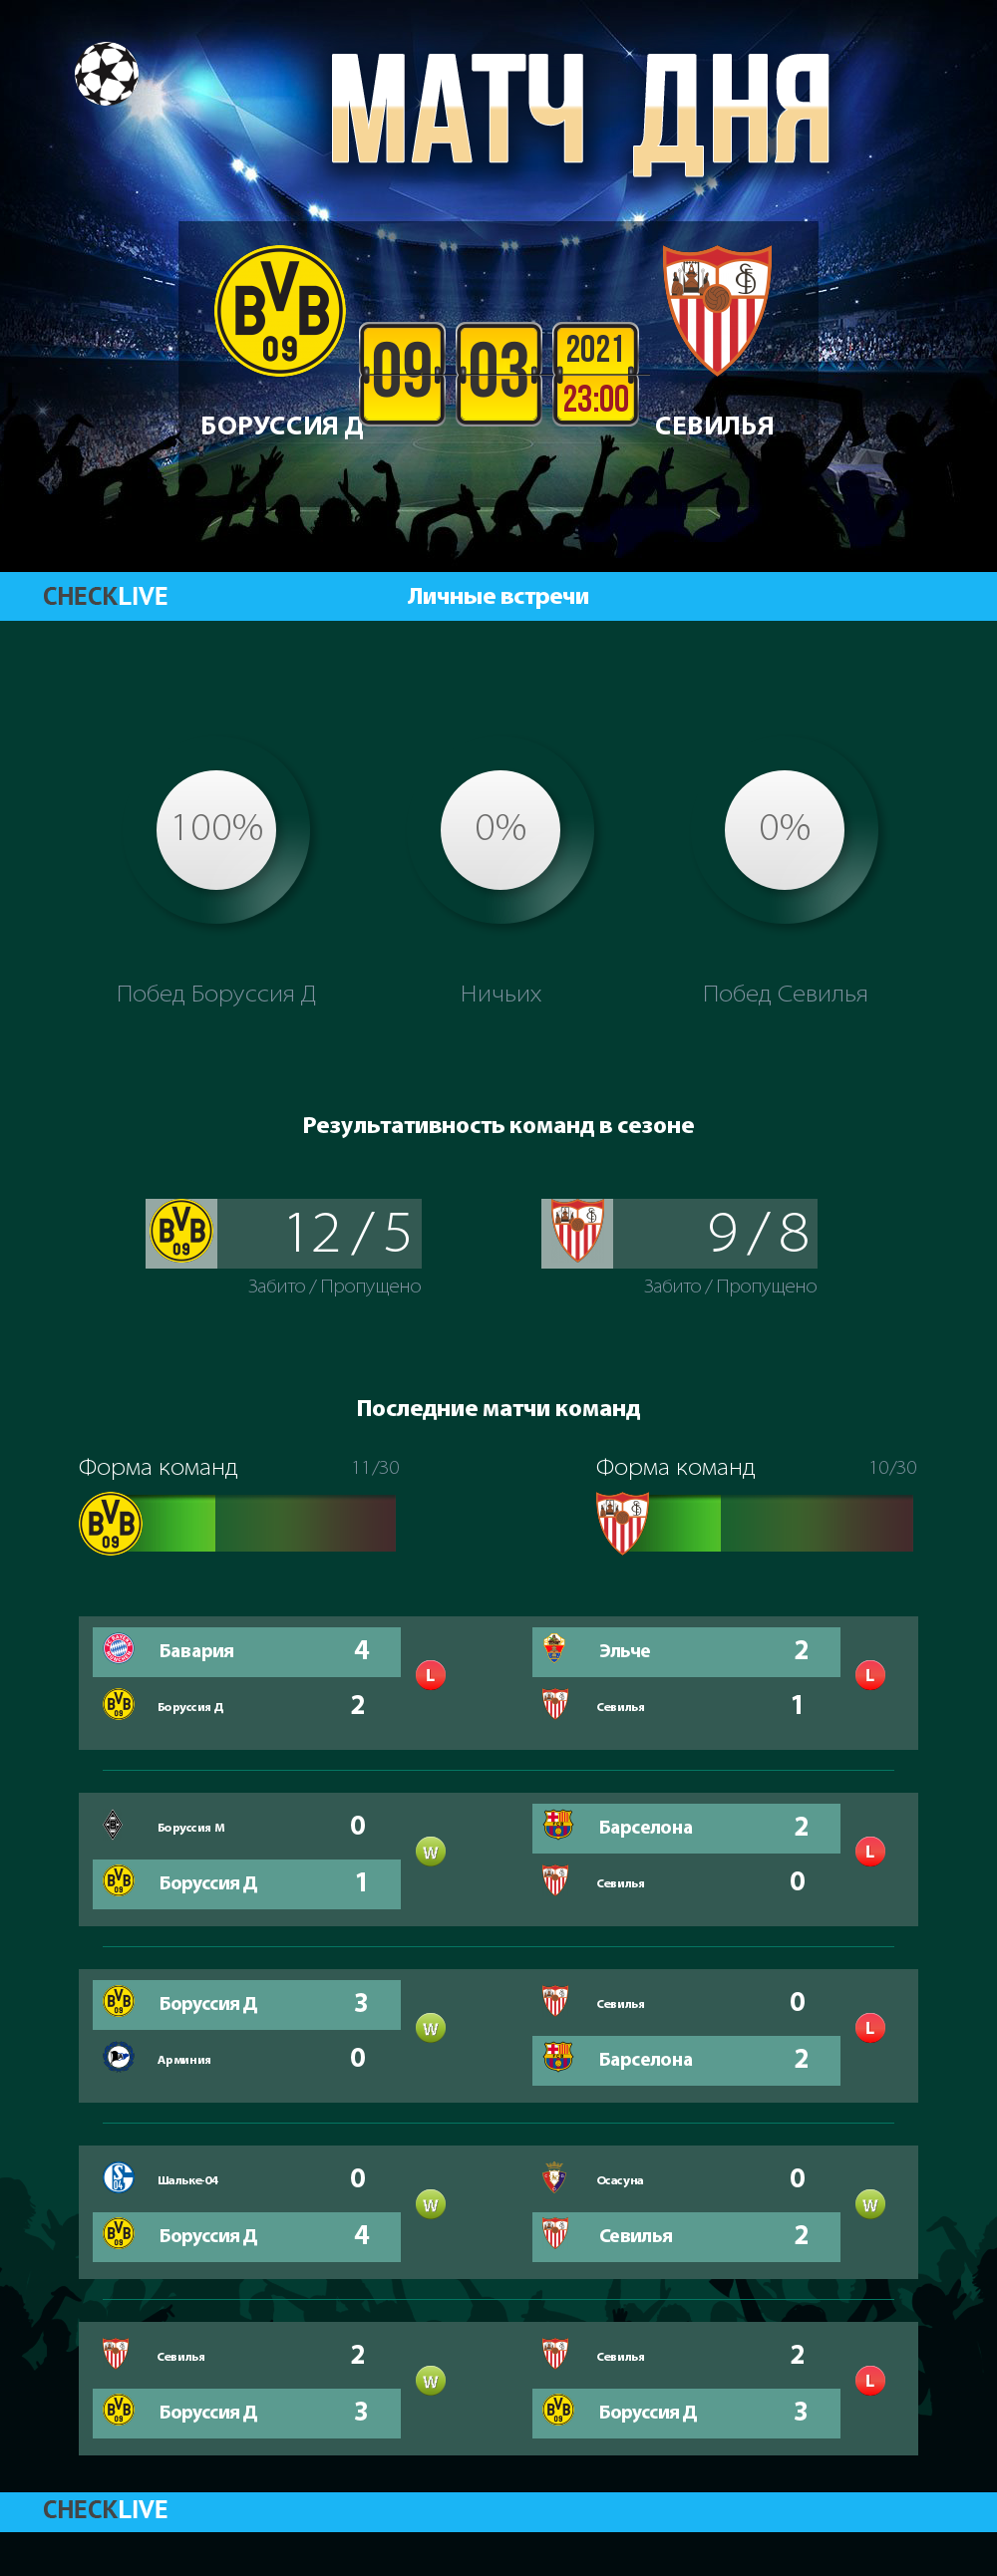 Инфографика Боруссия Д и Севилья матч дня 09.03.2021